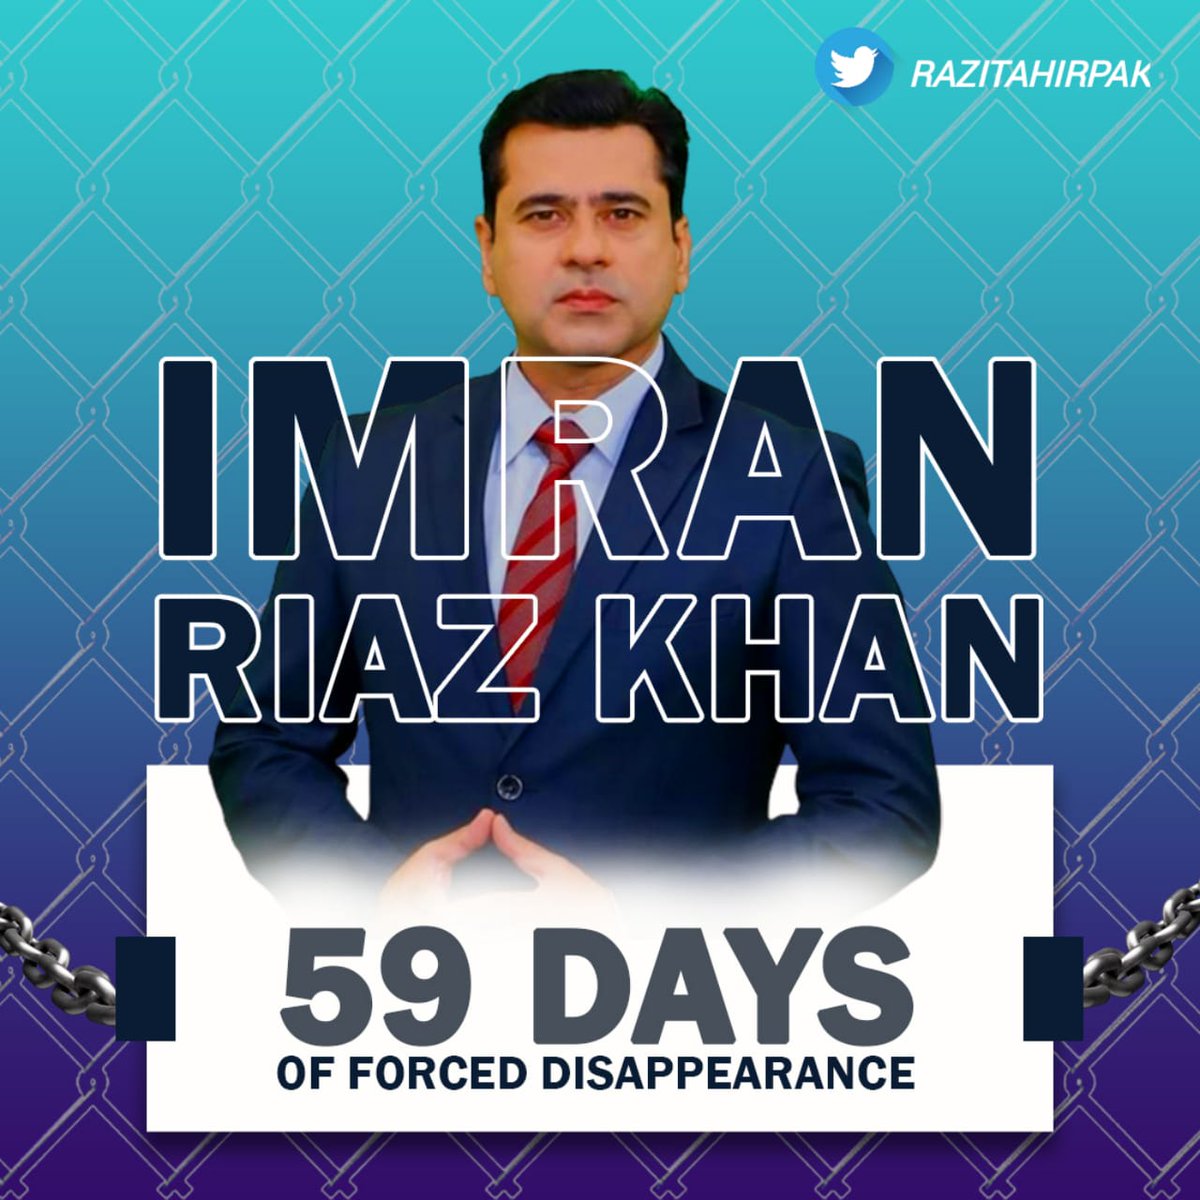 عمران ریاض خان 59 دن سے لاپتہ، قانون، آئین، جمہوریت اور انصاف بھی لاپتہ؛ کیا کریں، کیا کہیں، کیا لکھیں، چشم نم سے شرمندہ، ہم قلم سے شرمندہ!

#ReleaseImramRiazKhan